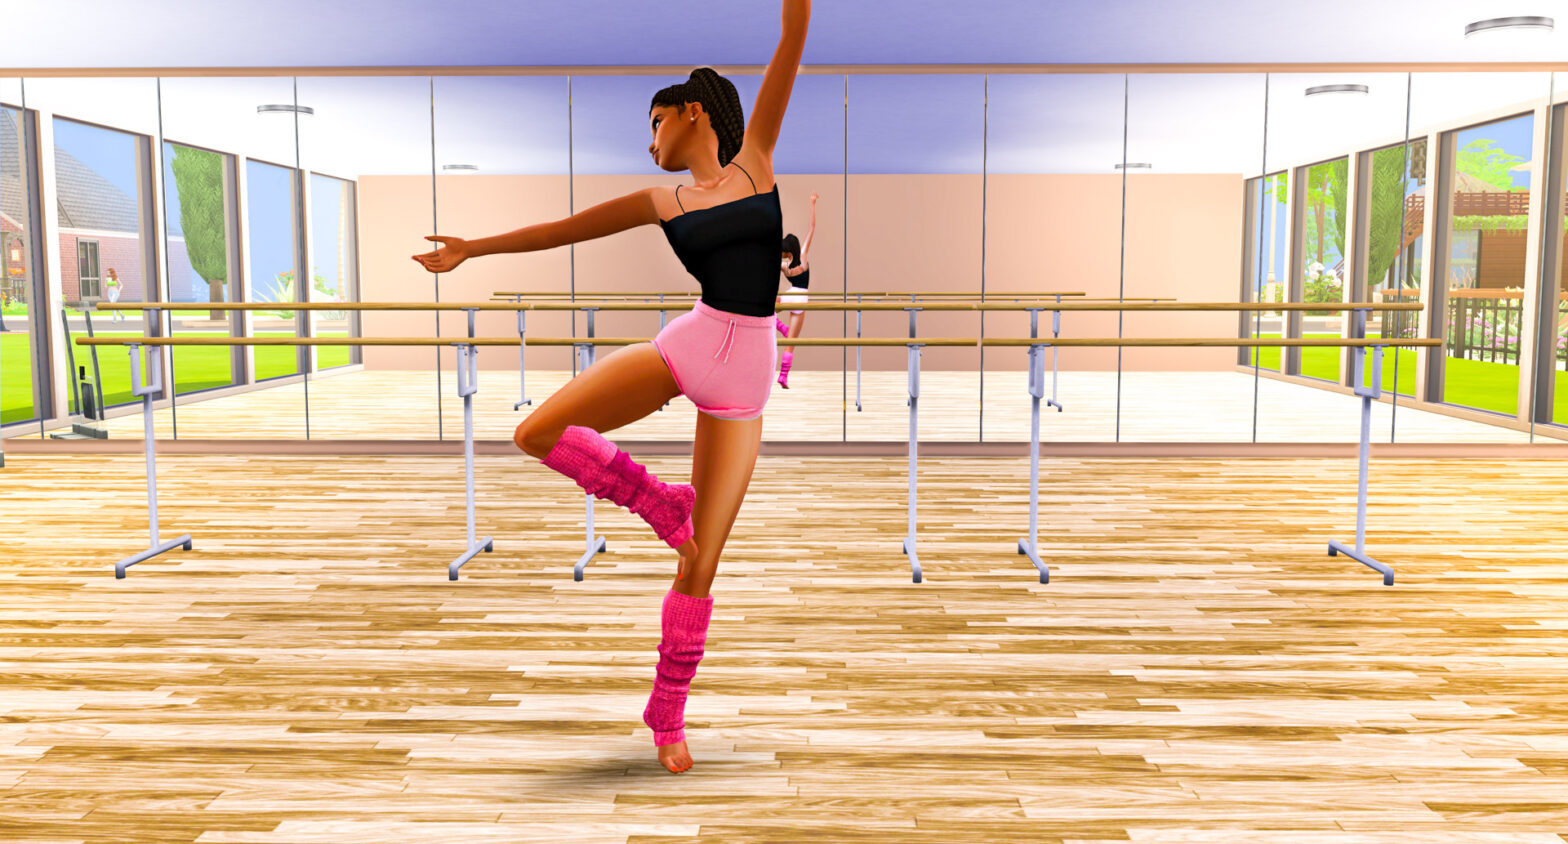 sims 4 ballet dance mod